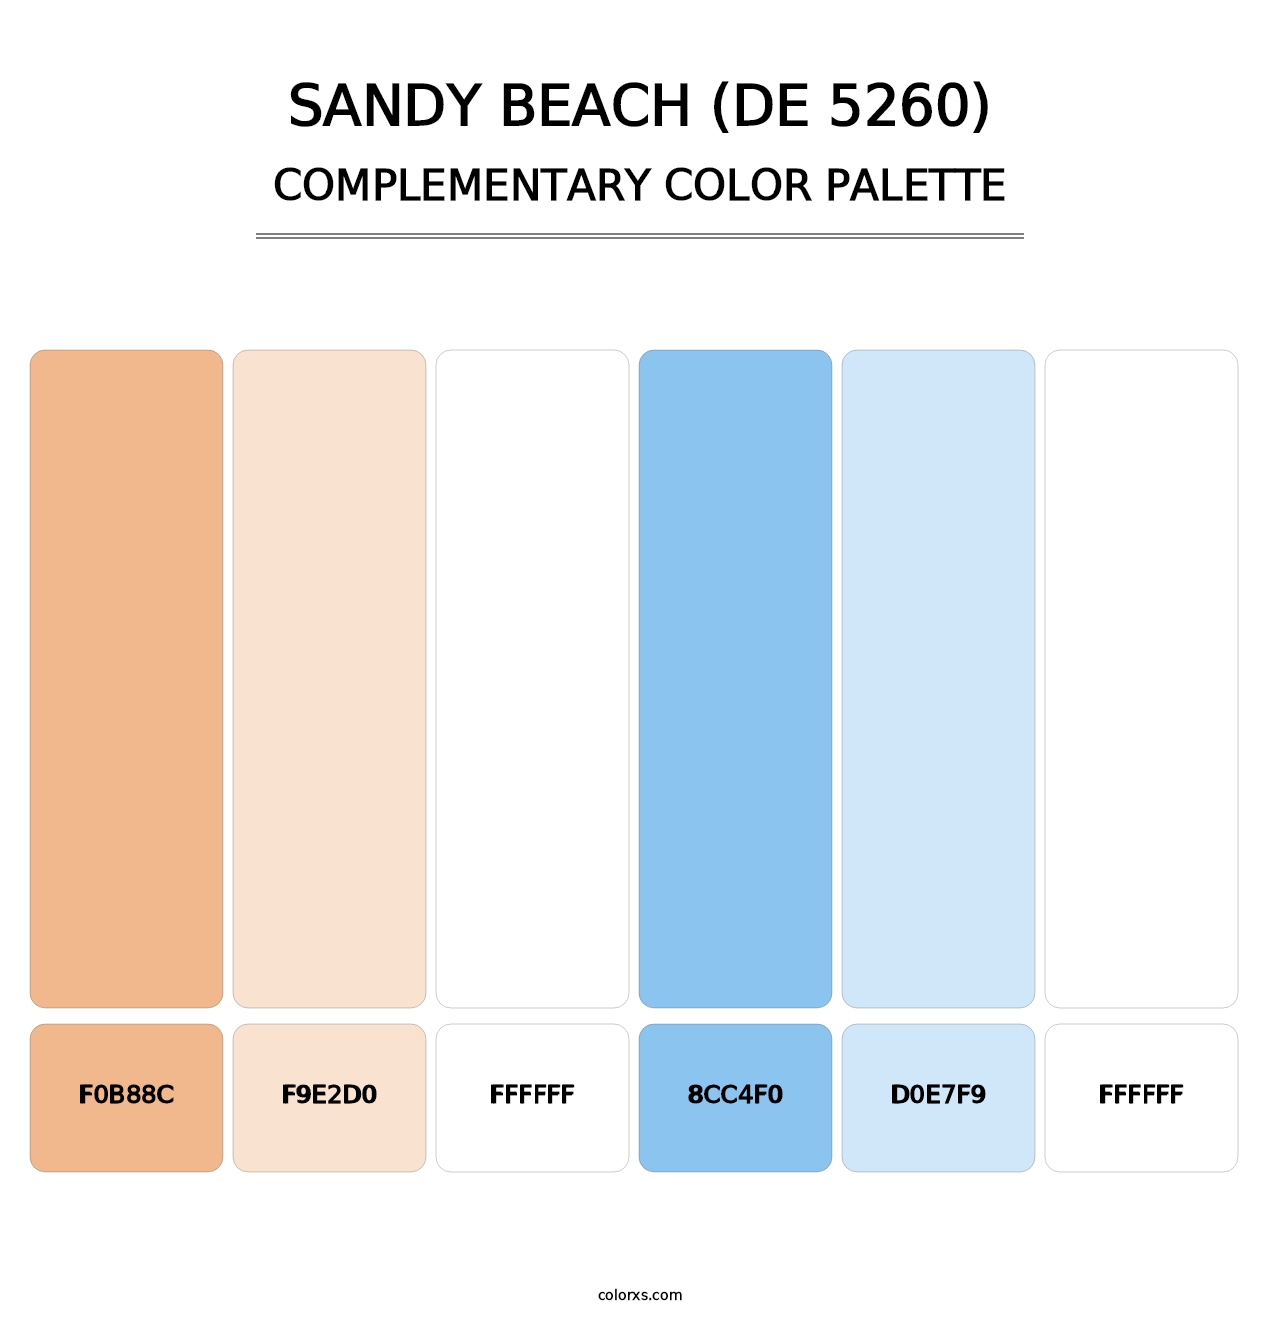 Sandy Beach (DE 5260) - Complementary Color Palette